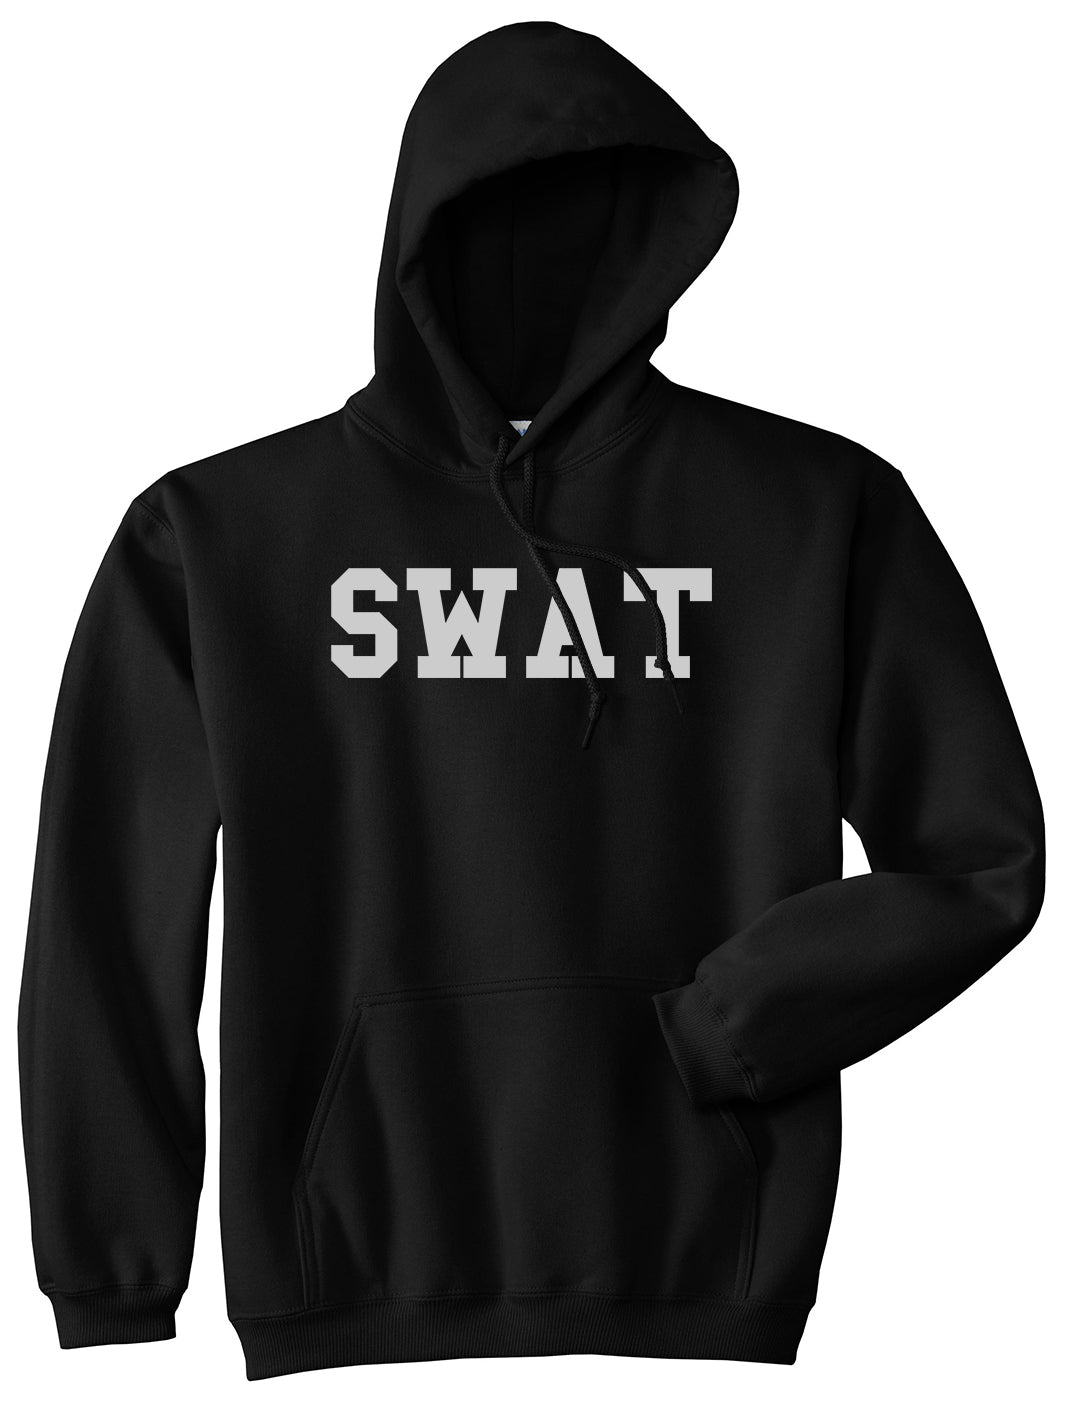 Swat Law Enforcement Mens Black Pullover Hoodie by KINGS OF NY